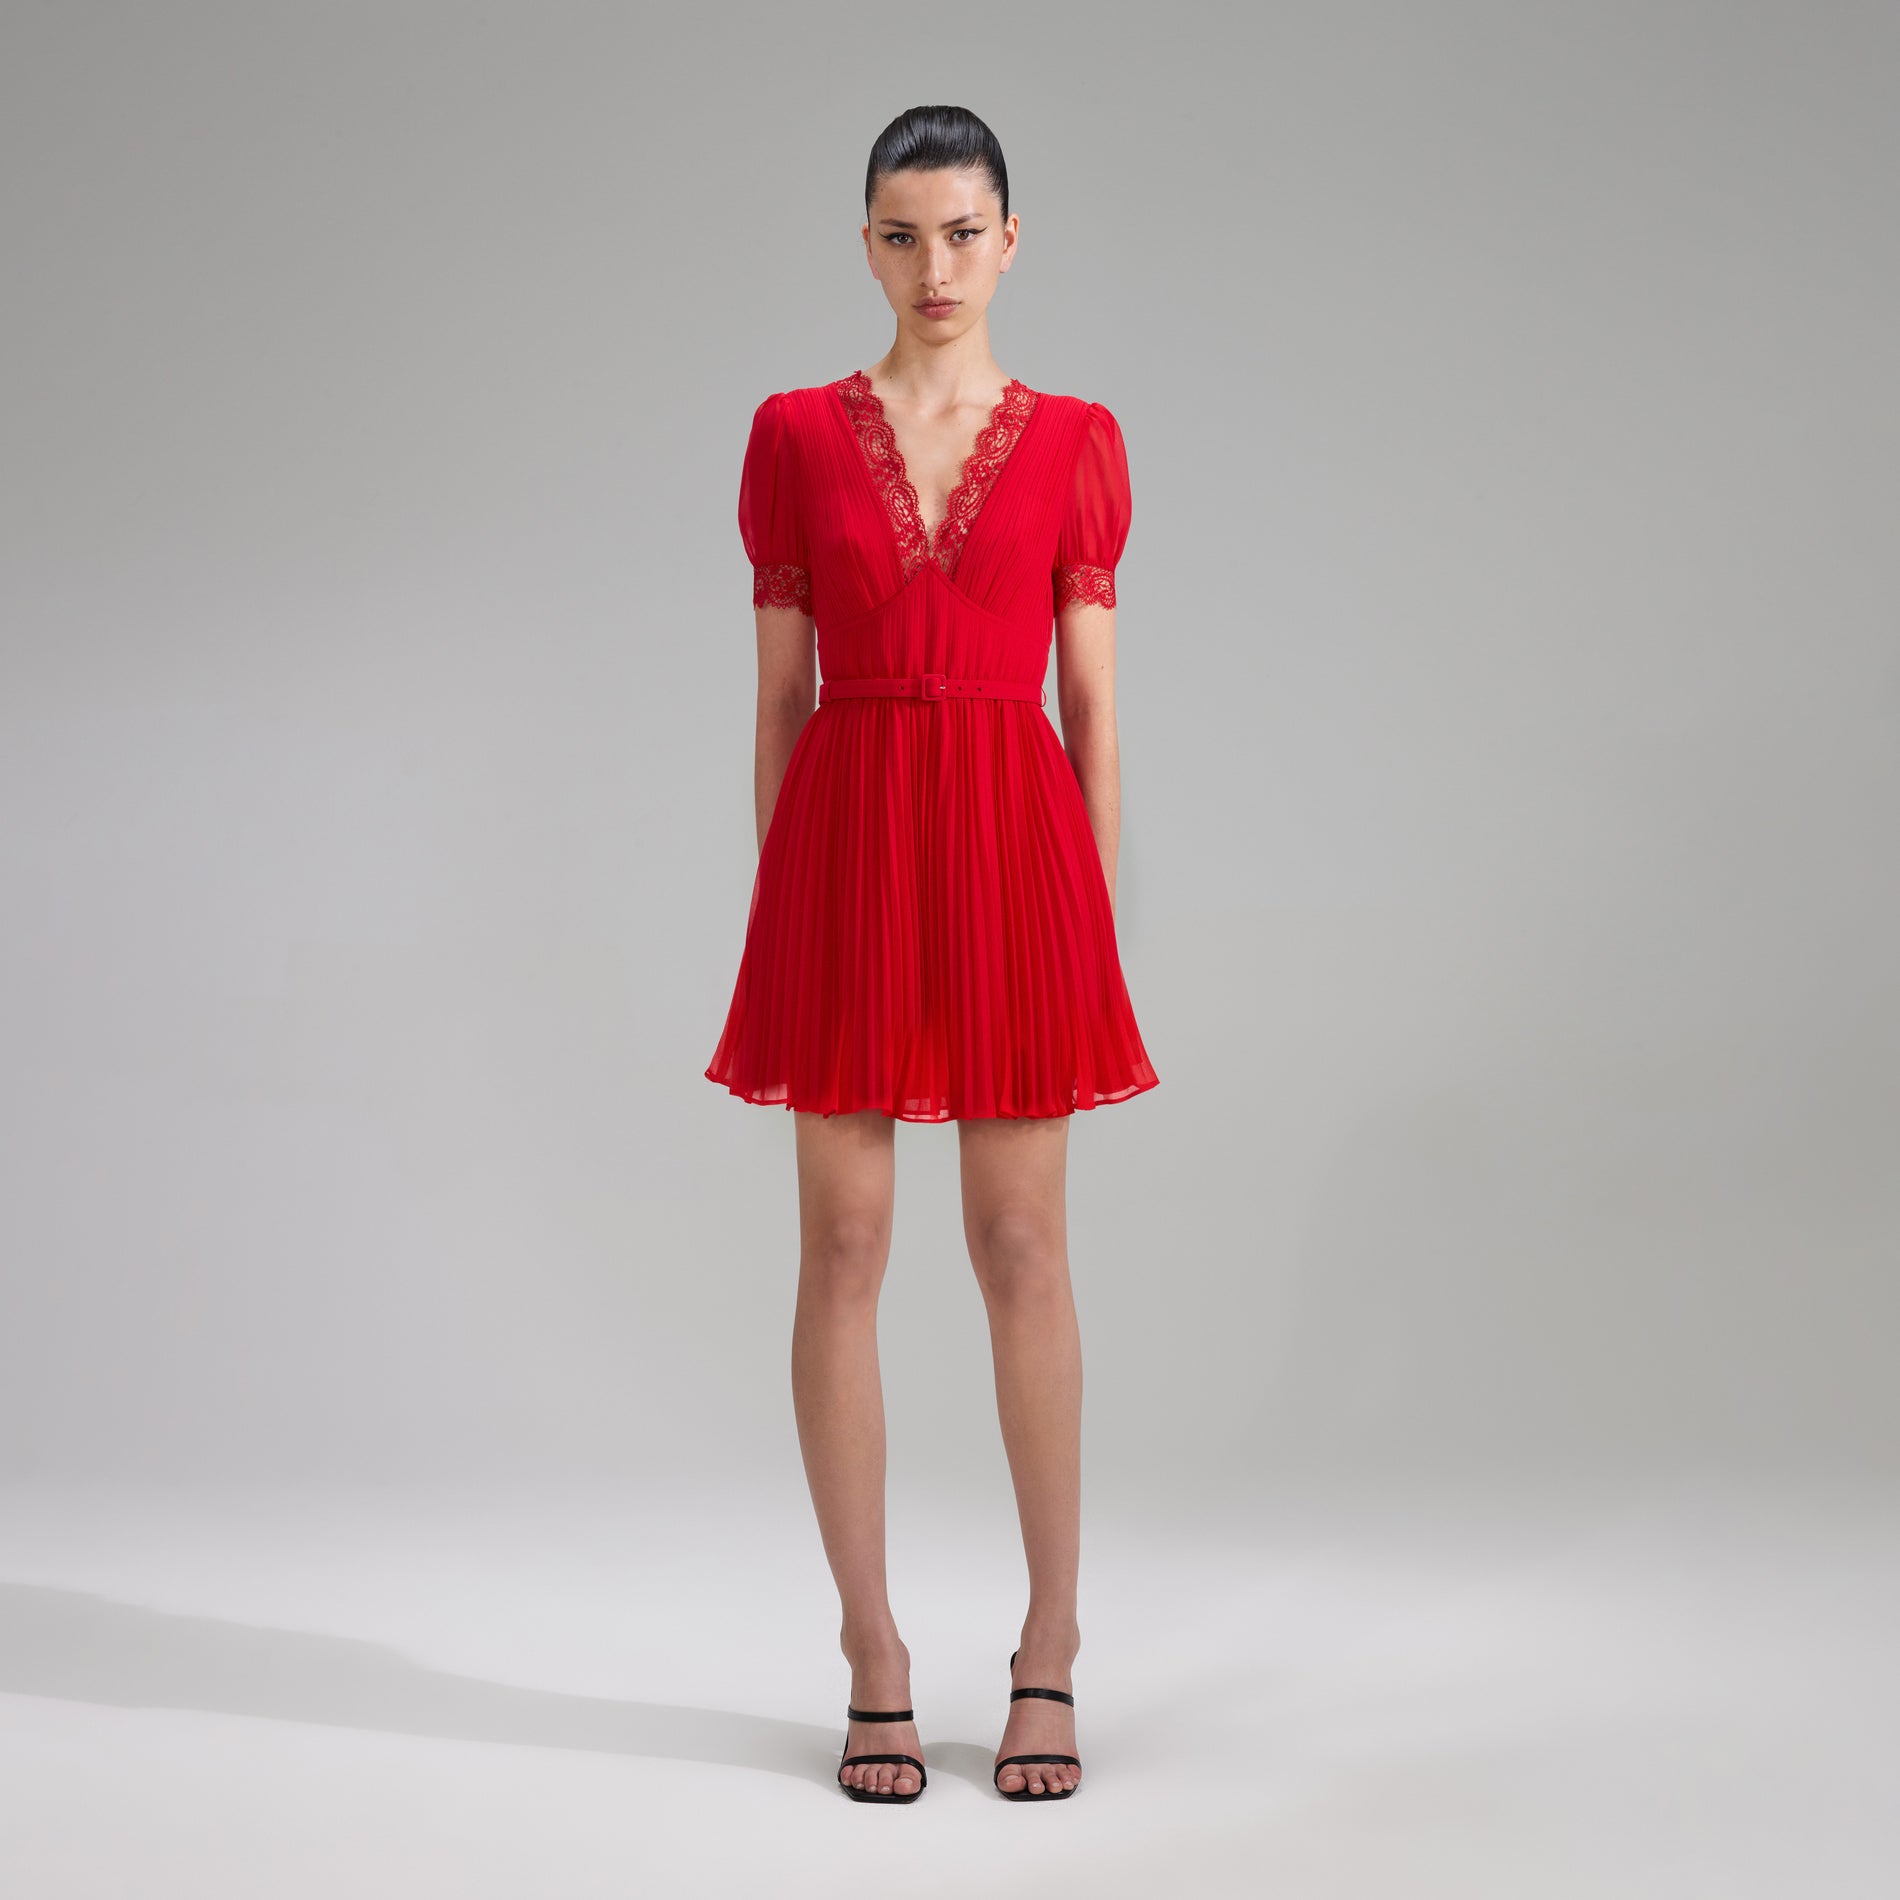 A woman wearing the Red Chiffon V Neck Mini Dress